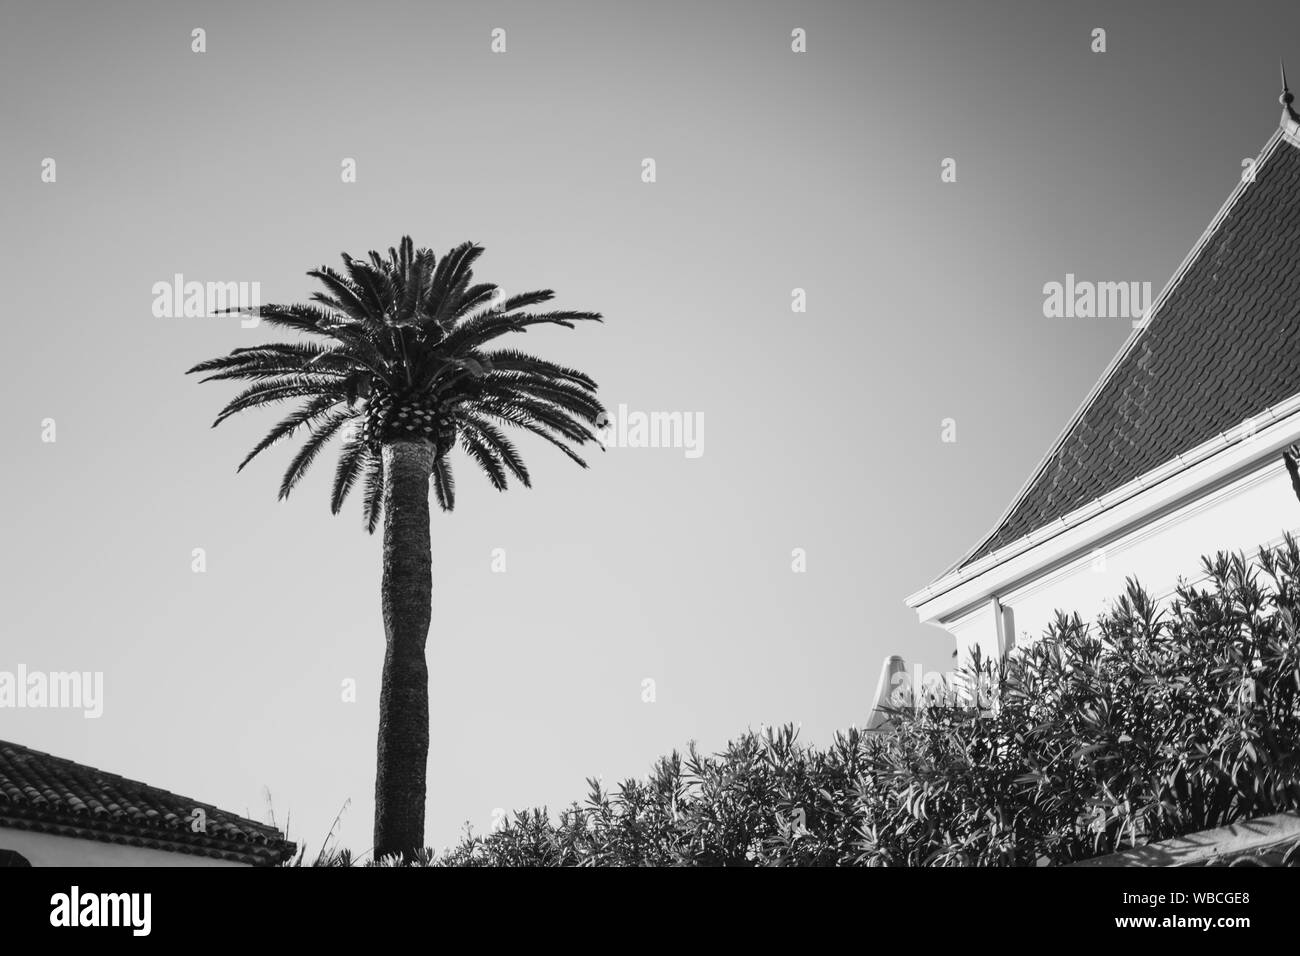 Prise de vue en niveaux de gris d'un arbre tropical près d'une maison et plantes Banque D'Images